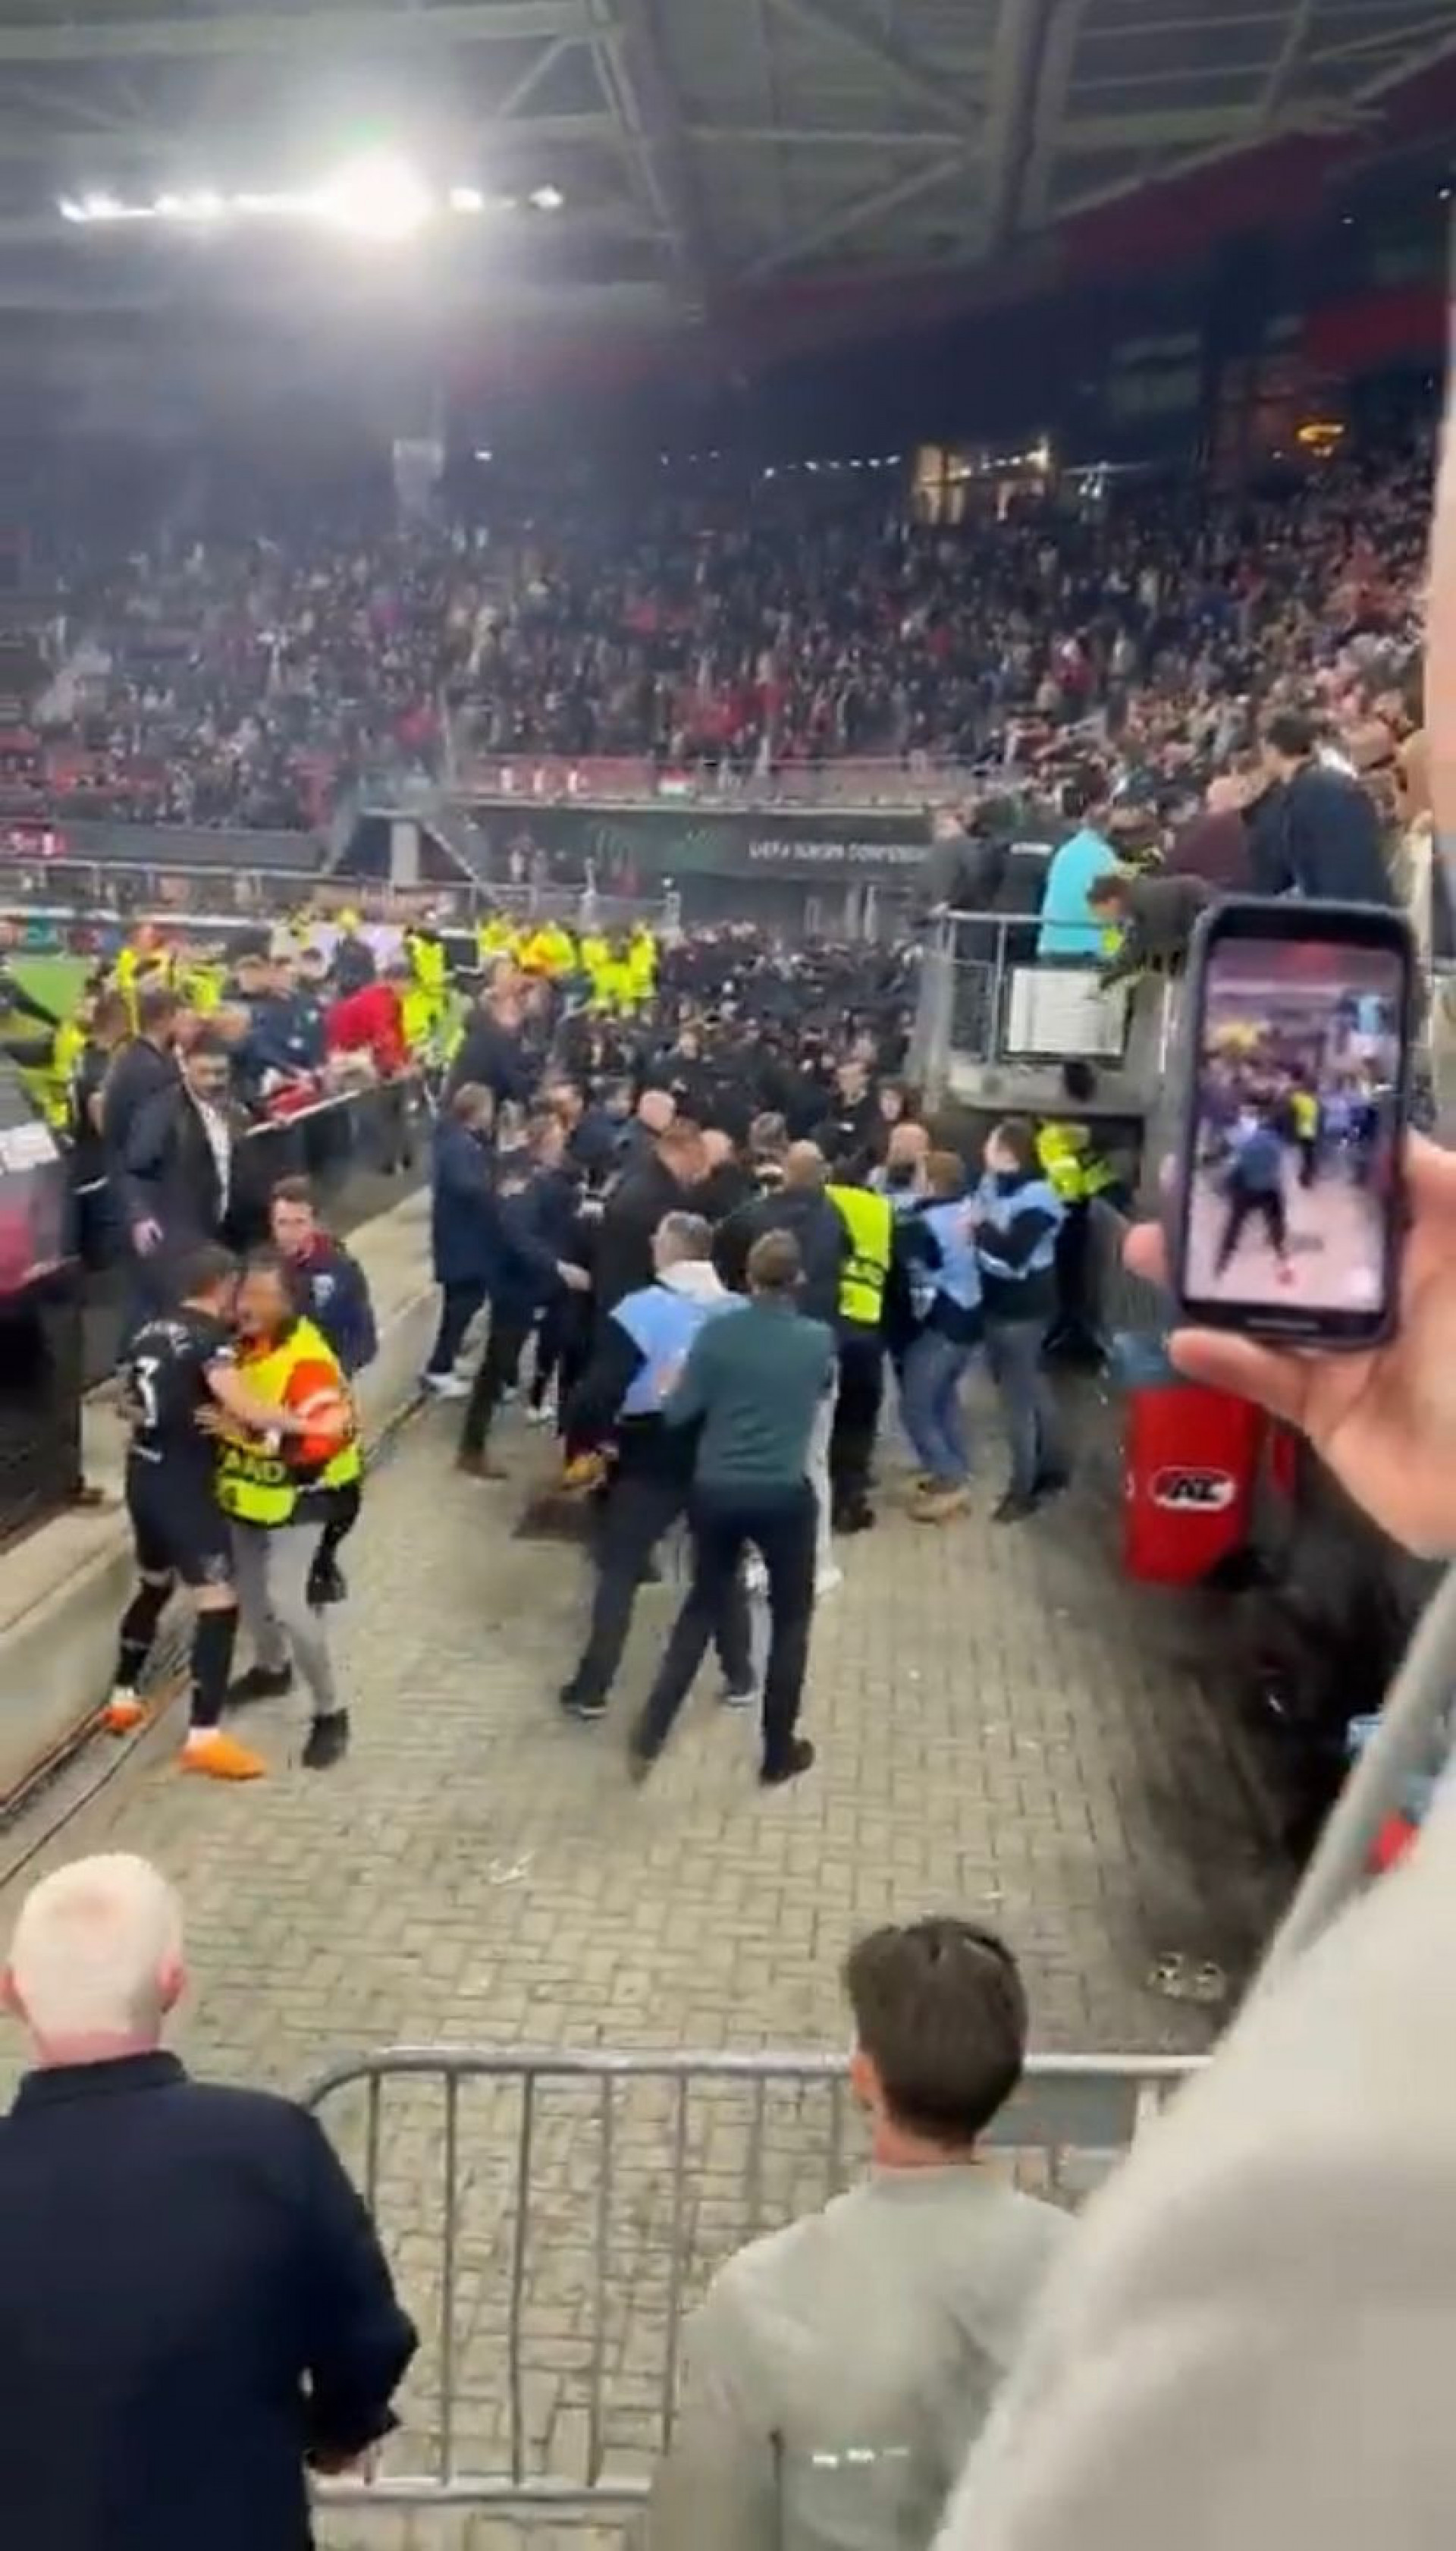 Confusão após o jogo entre AZ Alkmaar e West Ham - Foto: Reprodução/Twitter @COYIronscom